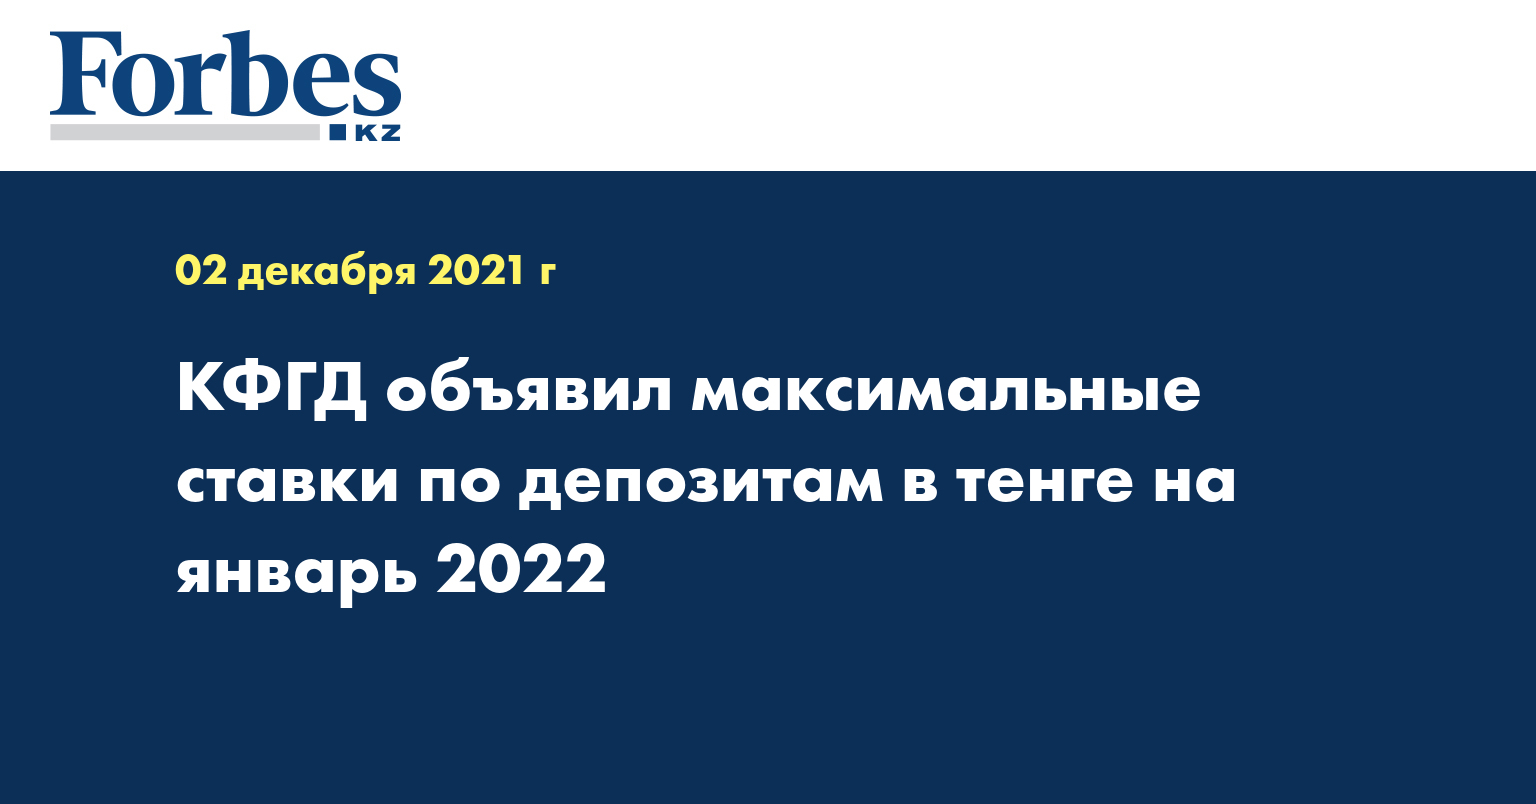 КФГД объявил максимальные ставки по депозитам в тенге на январь 2022